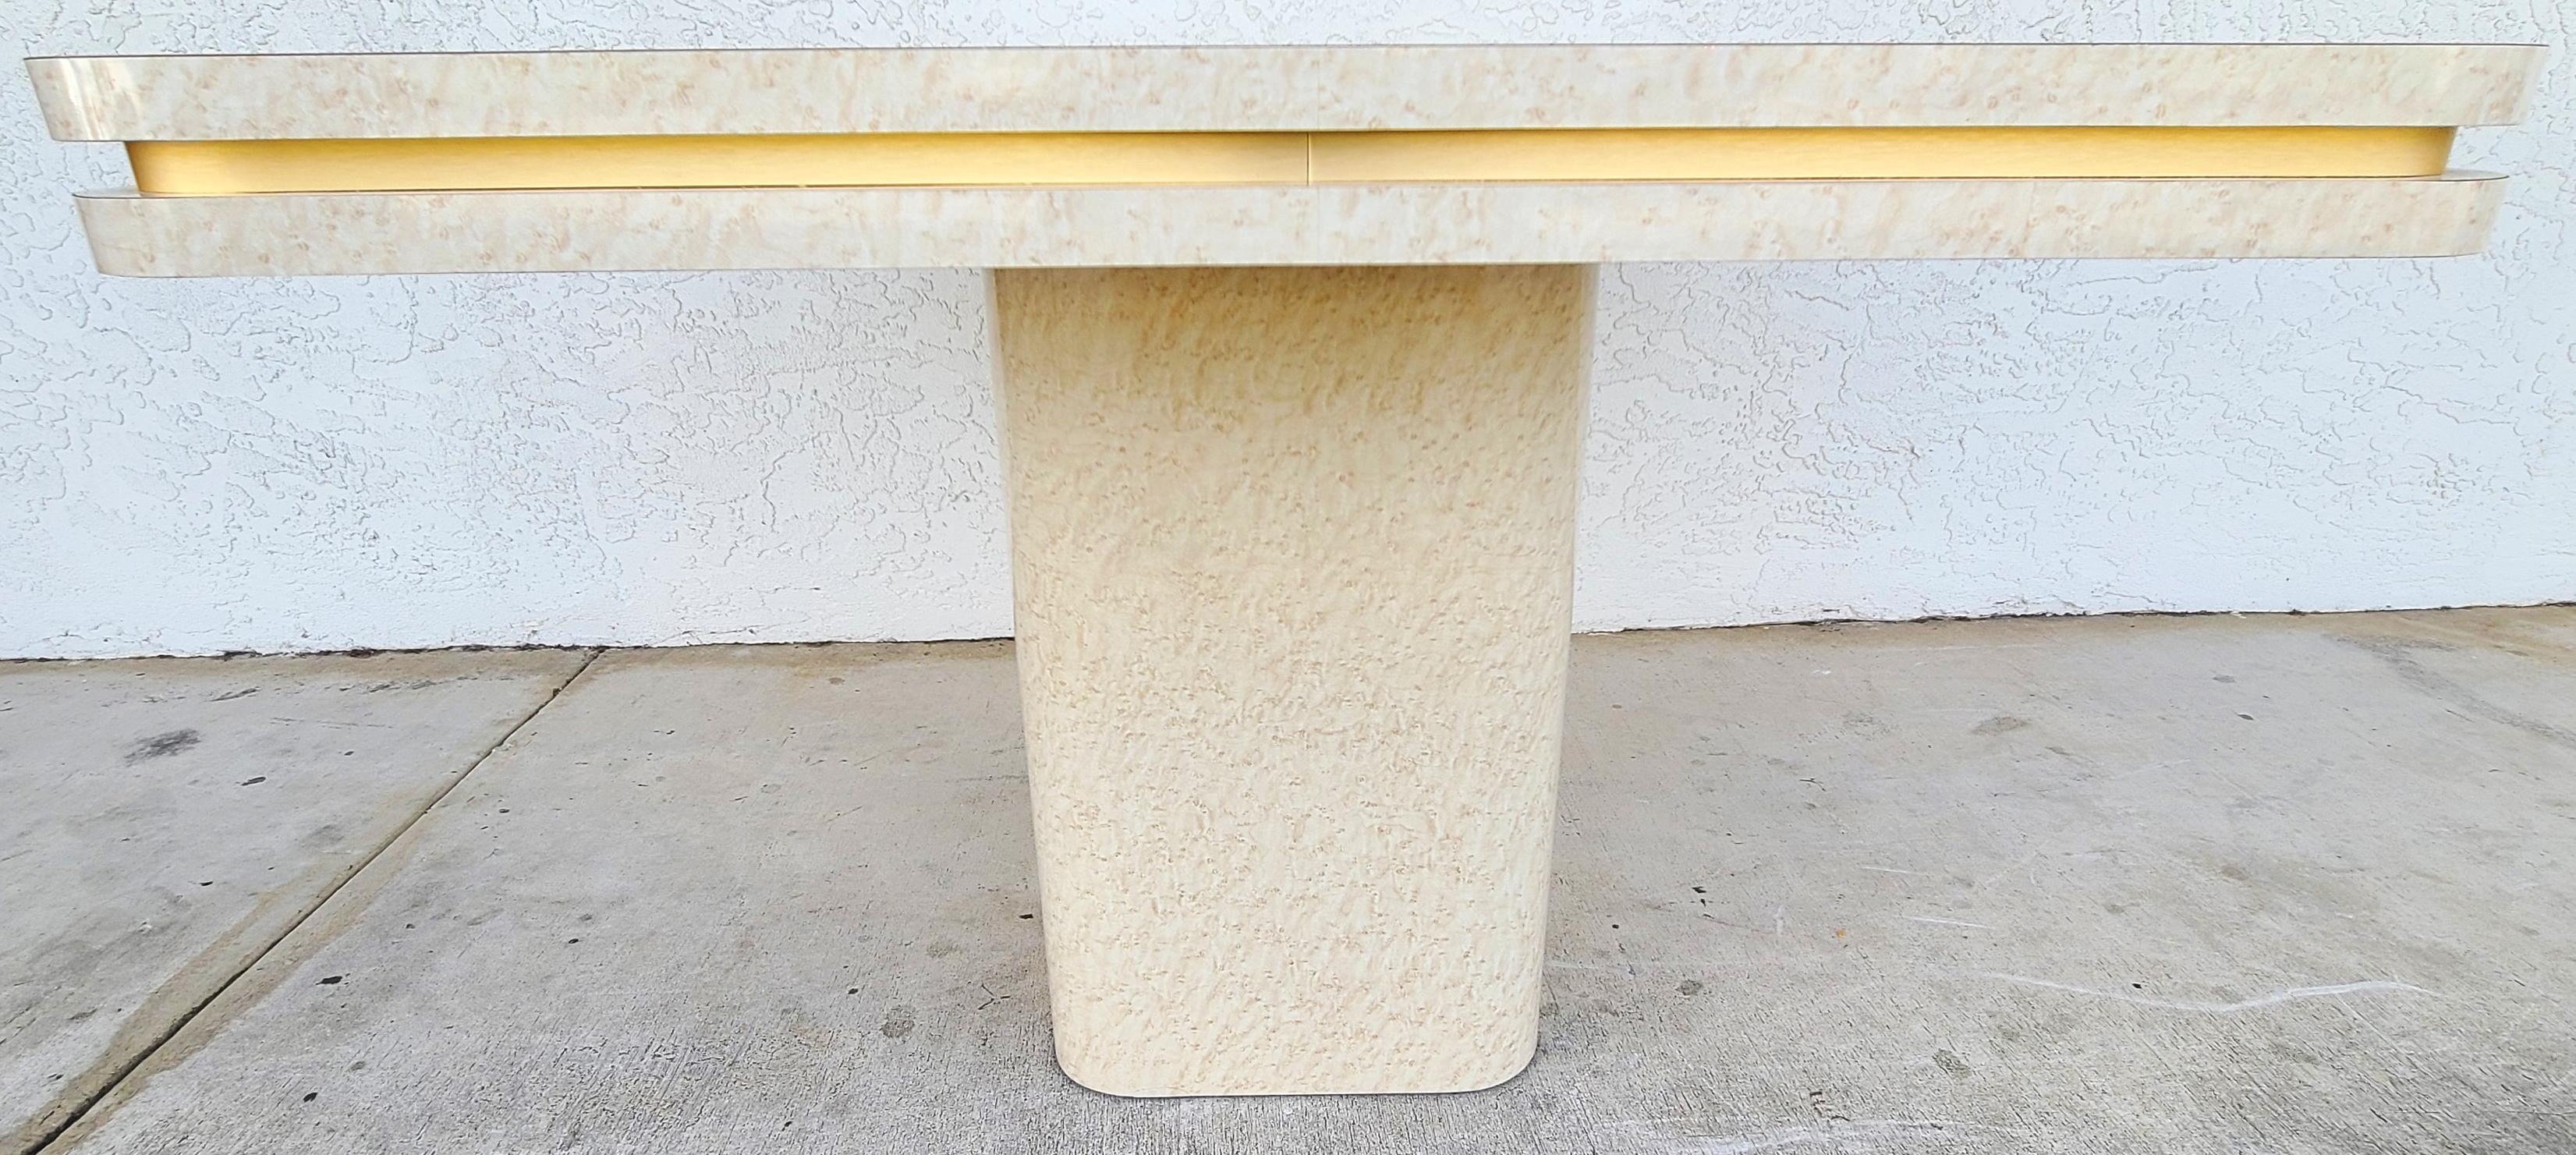 Bietet eine unserer jüngsten Palm Beach Estate Fine Furniture Akquisitionen eines 1960er Mid Century Modern Formica Sockel Dining Game Table mit Recessed Gold Trim um die Seitenränder.

Wir hatten 2 davon, als wir das Angebot gemacht haben. Einer